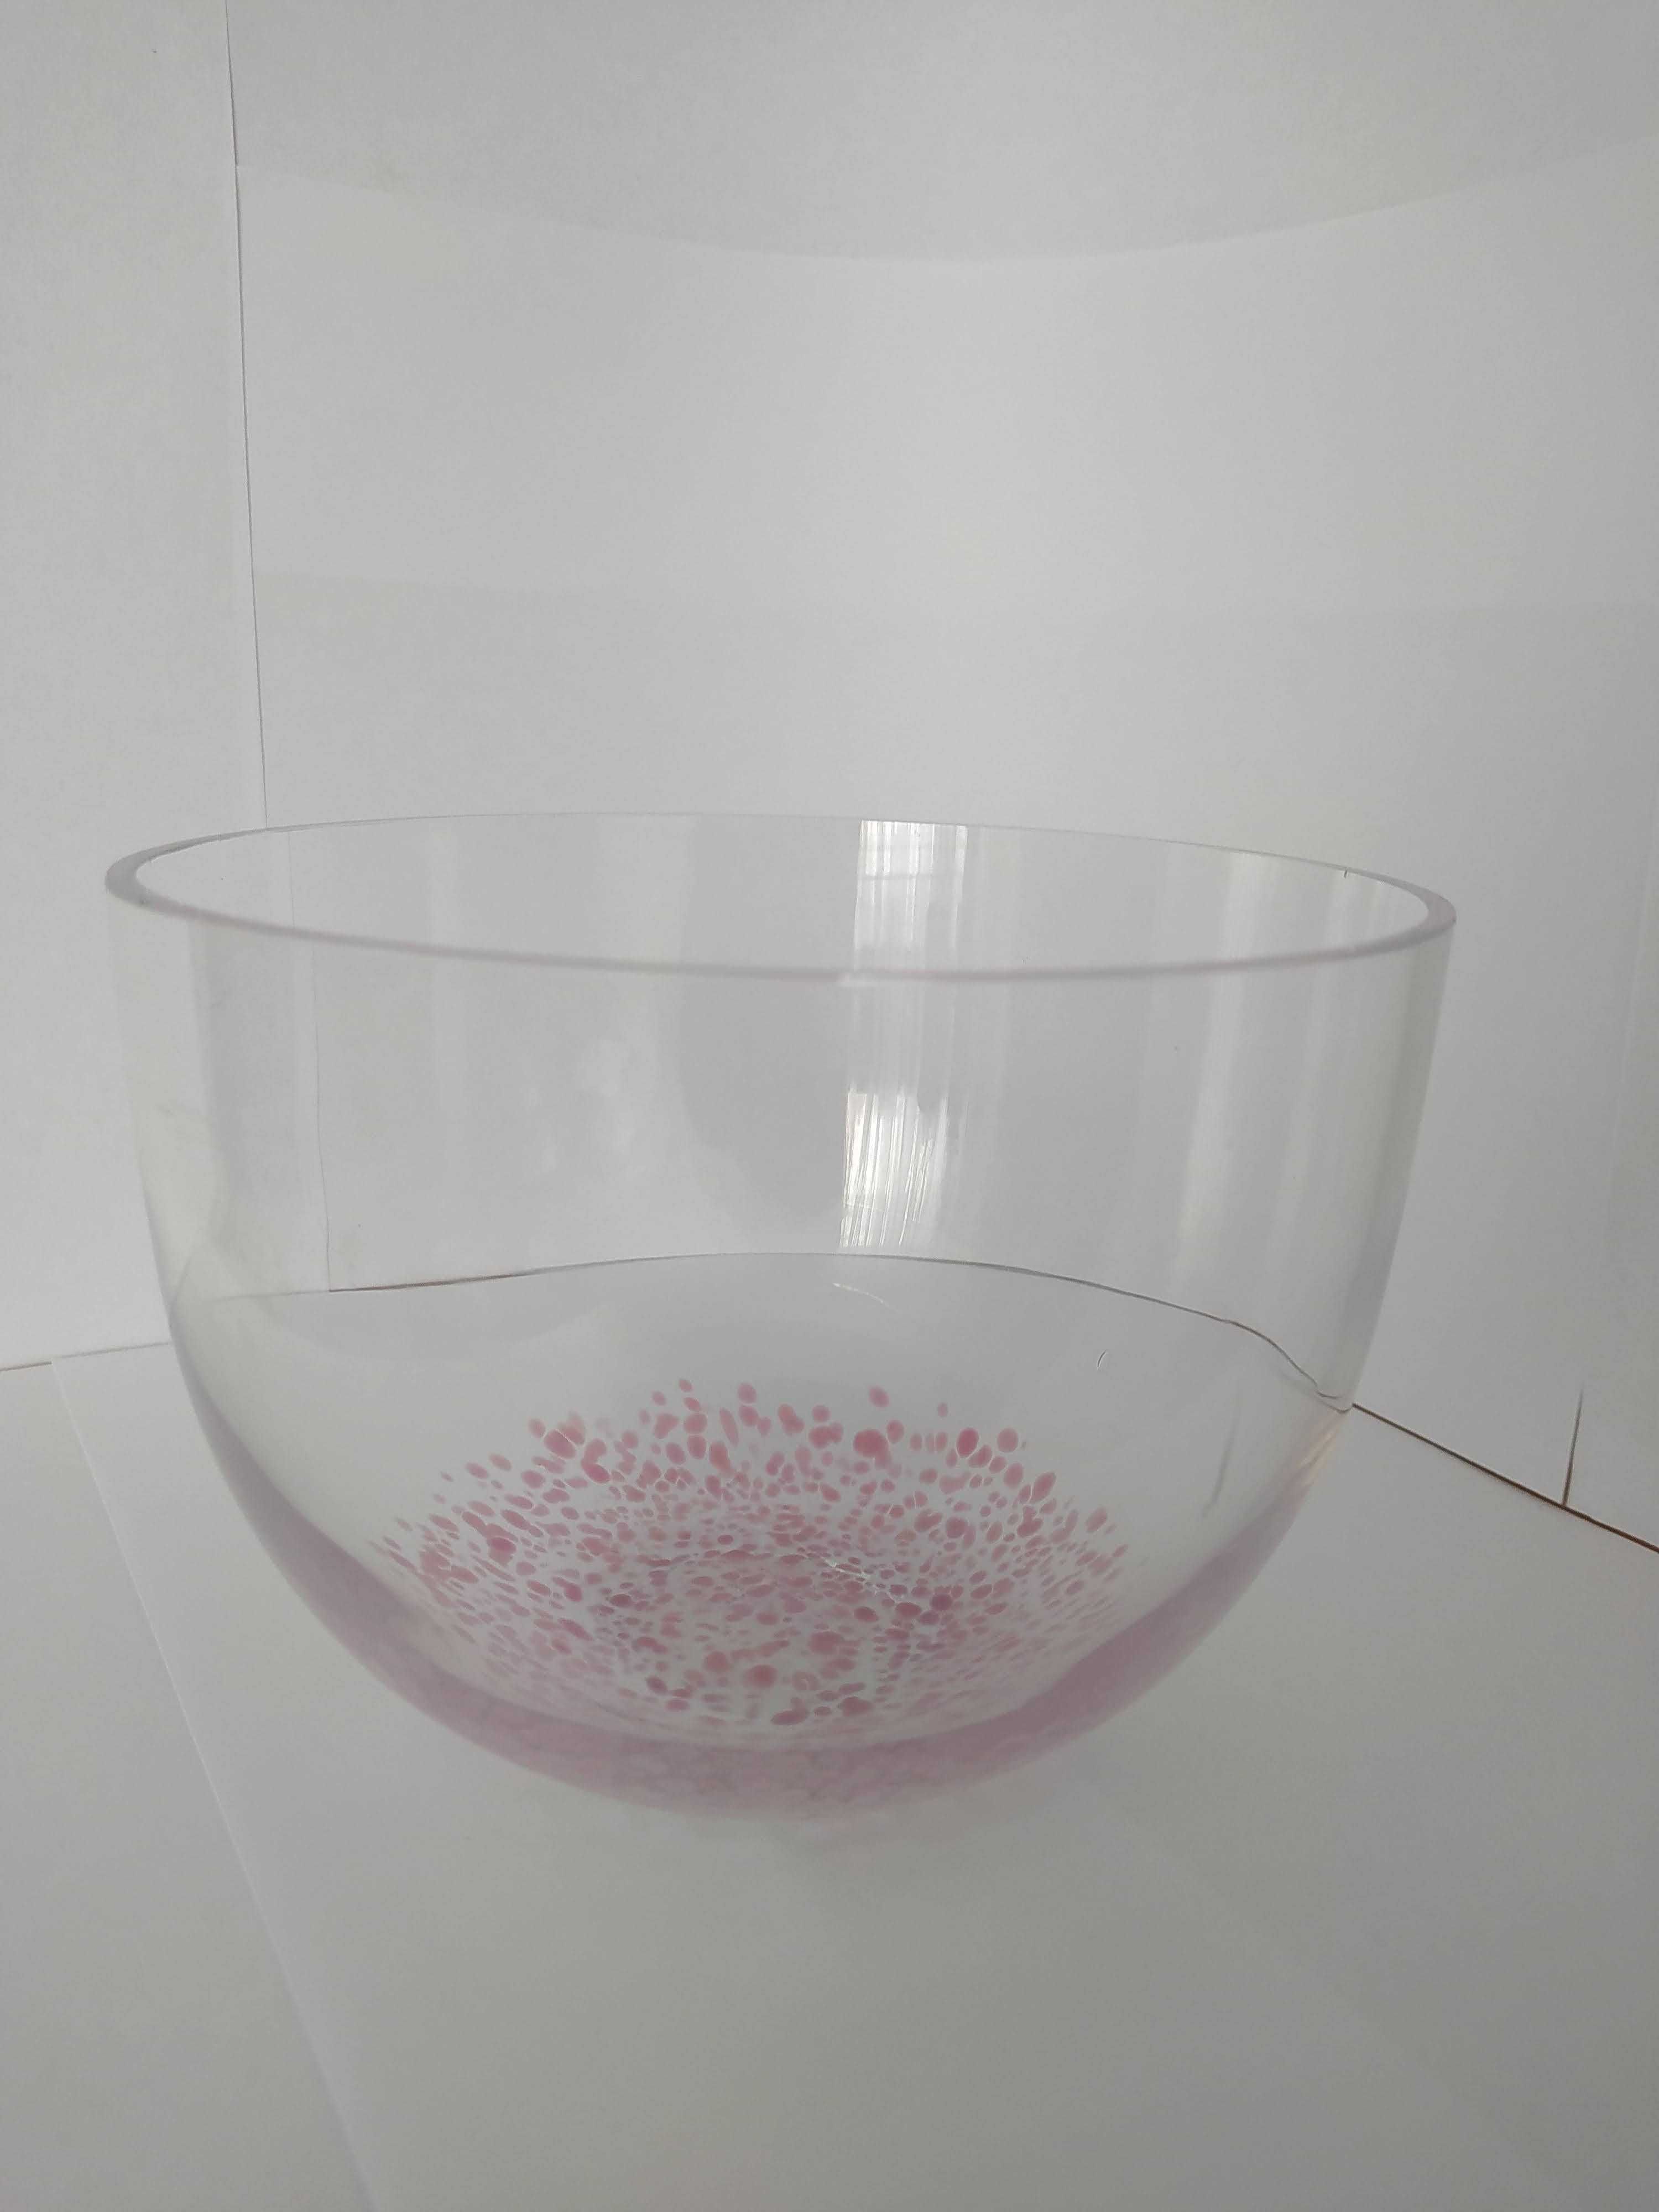 Miska Lindshammar Szwecja szkło różowe plamki